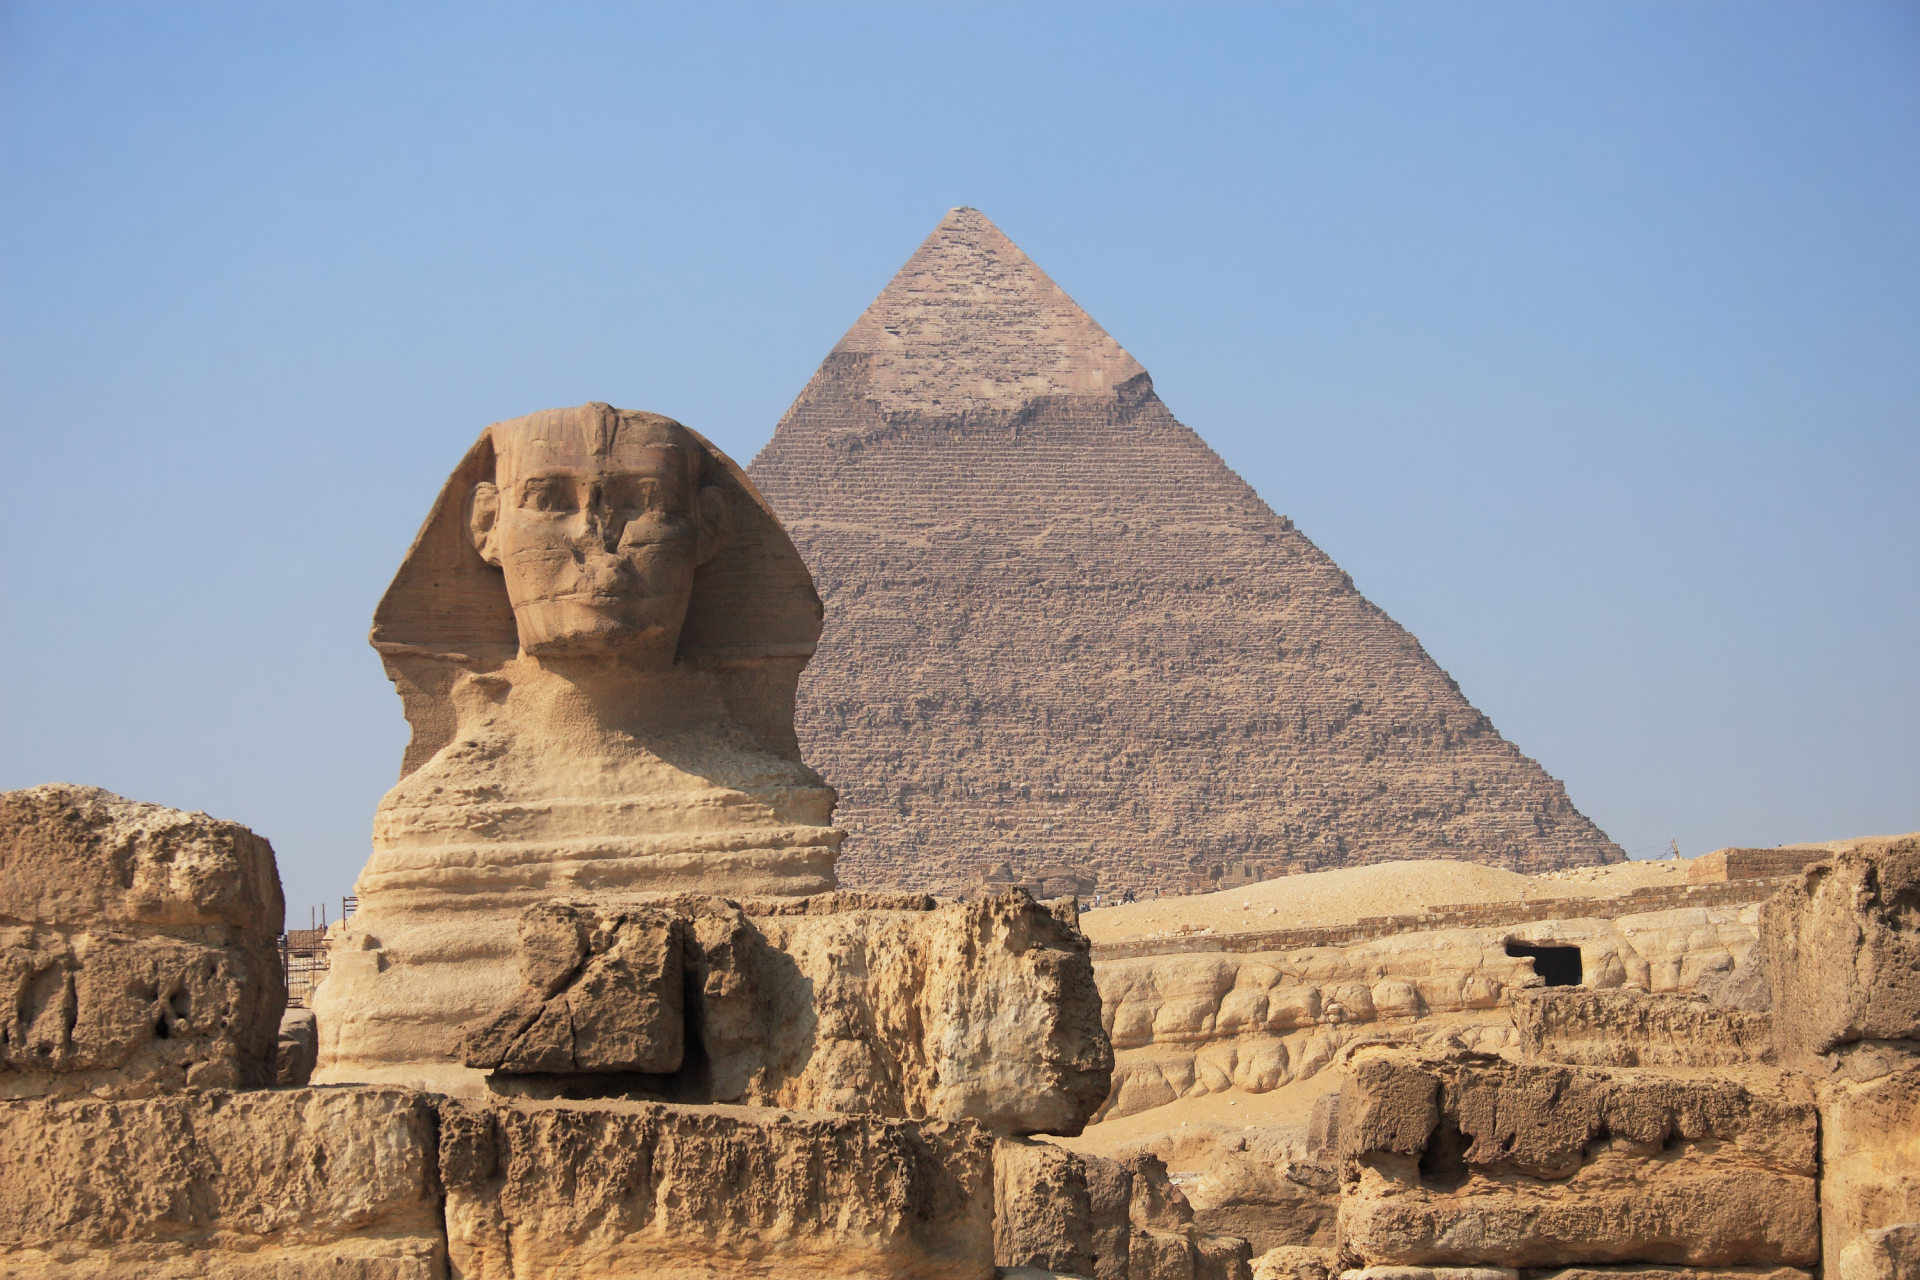 Разбулиха мистерията: Хеопсовата пирамида е построена не с дялани камъни, а с...